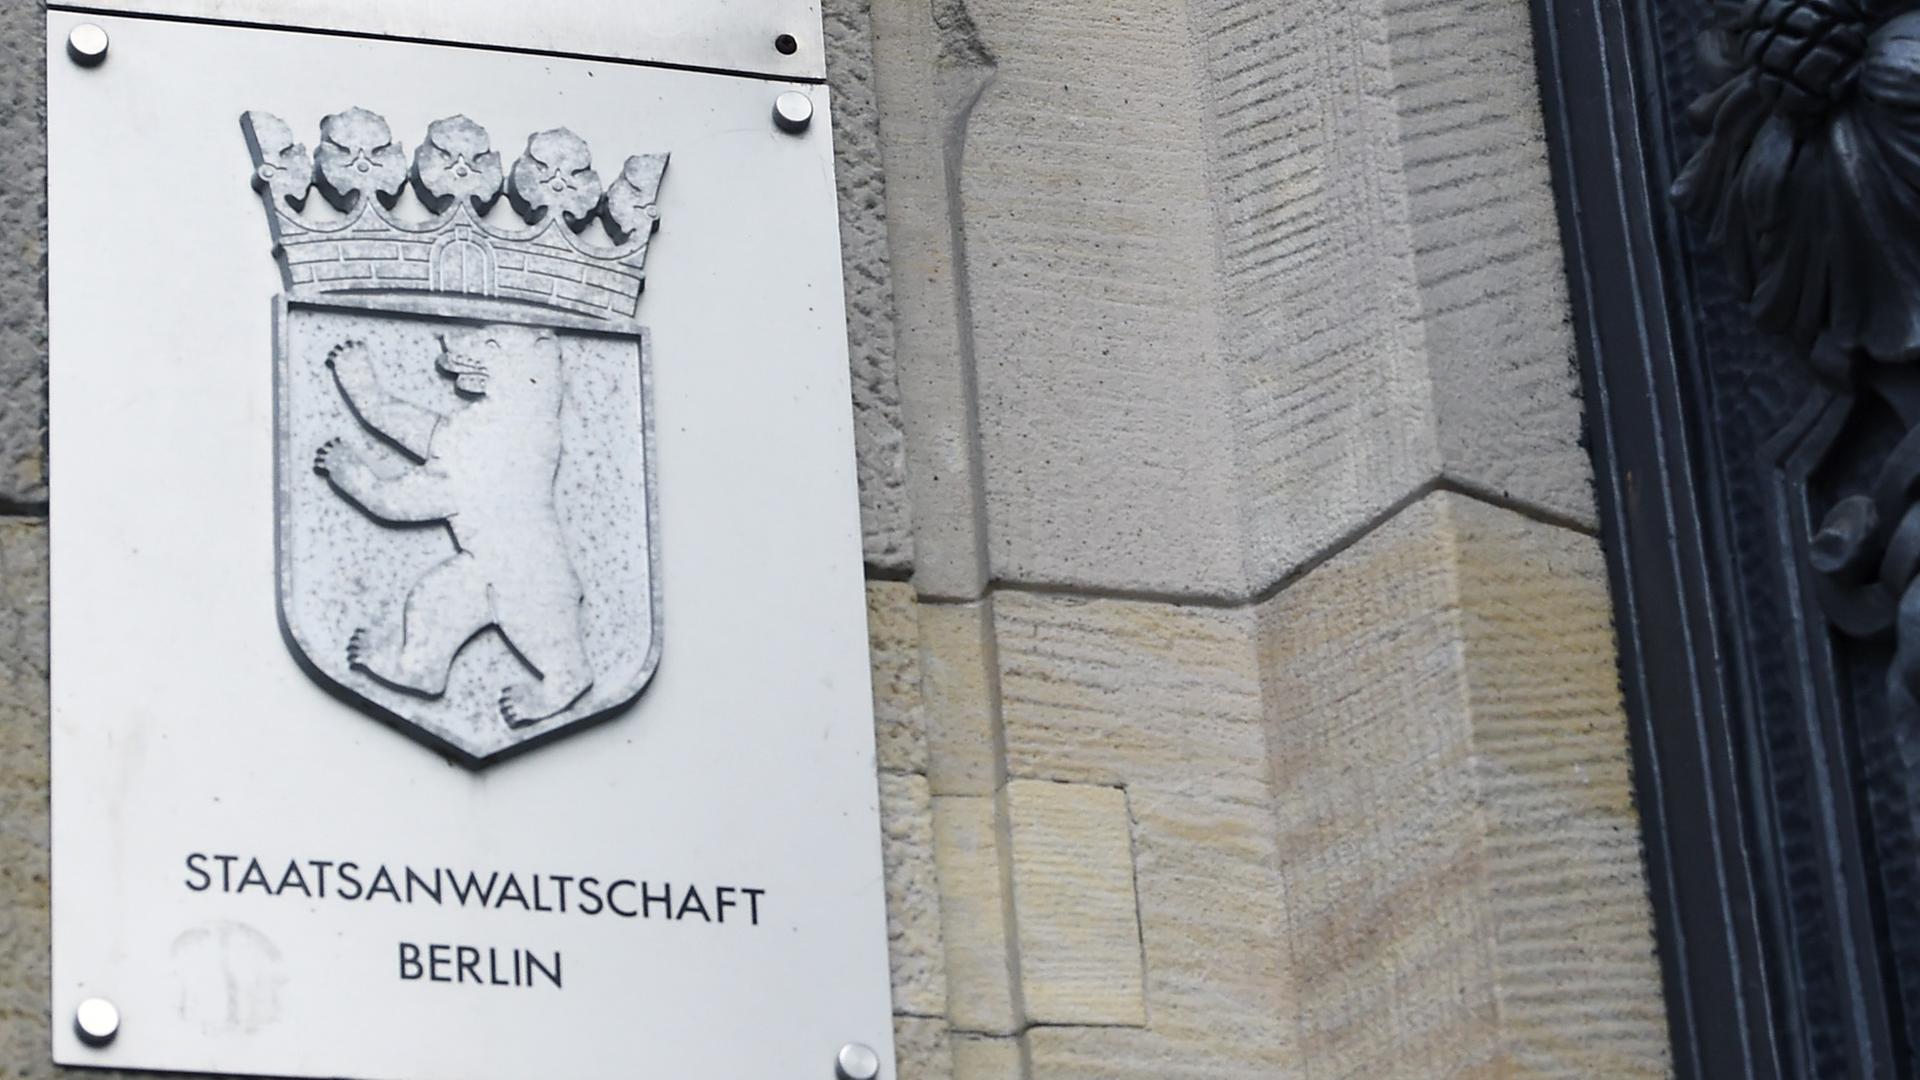 Berlin: Schilder an der Fassade des Kriminalgerichts Moabit weisen die Staatsanwaltschaft Berlin und das Landgericht Berlin aus.